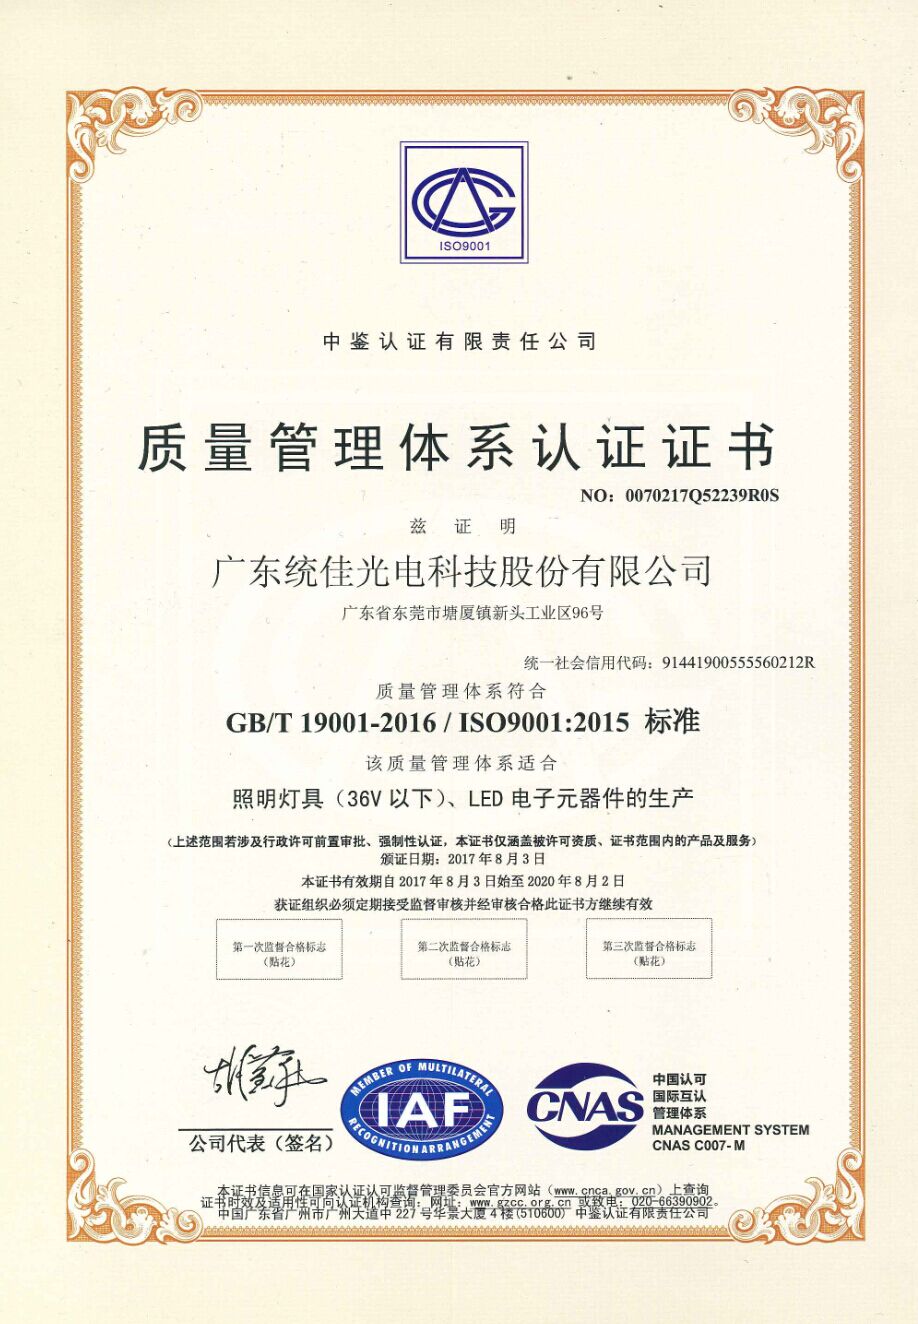 LED荣耀证书ISO9001认证证书